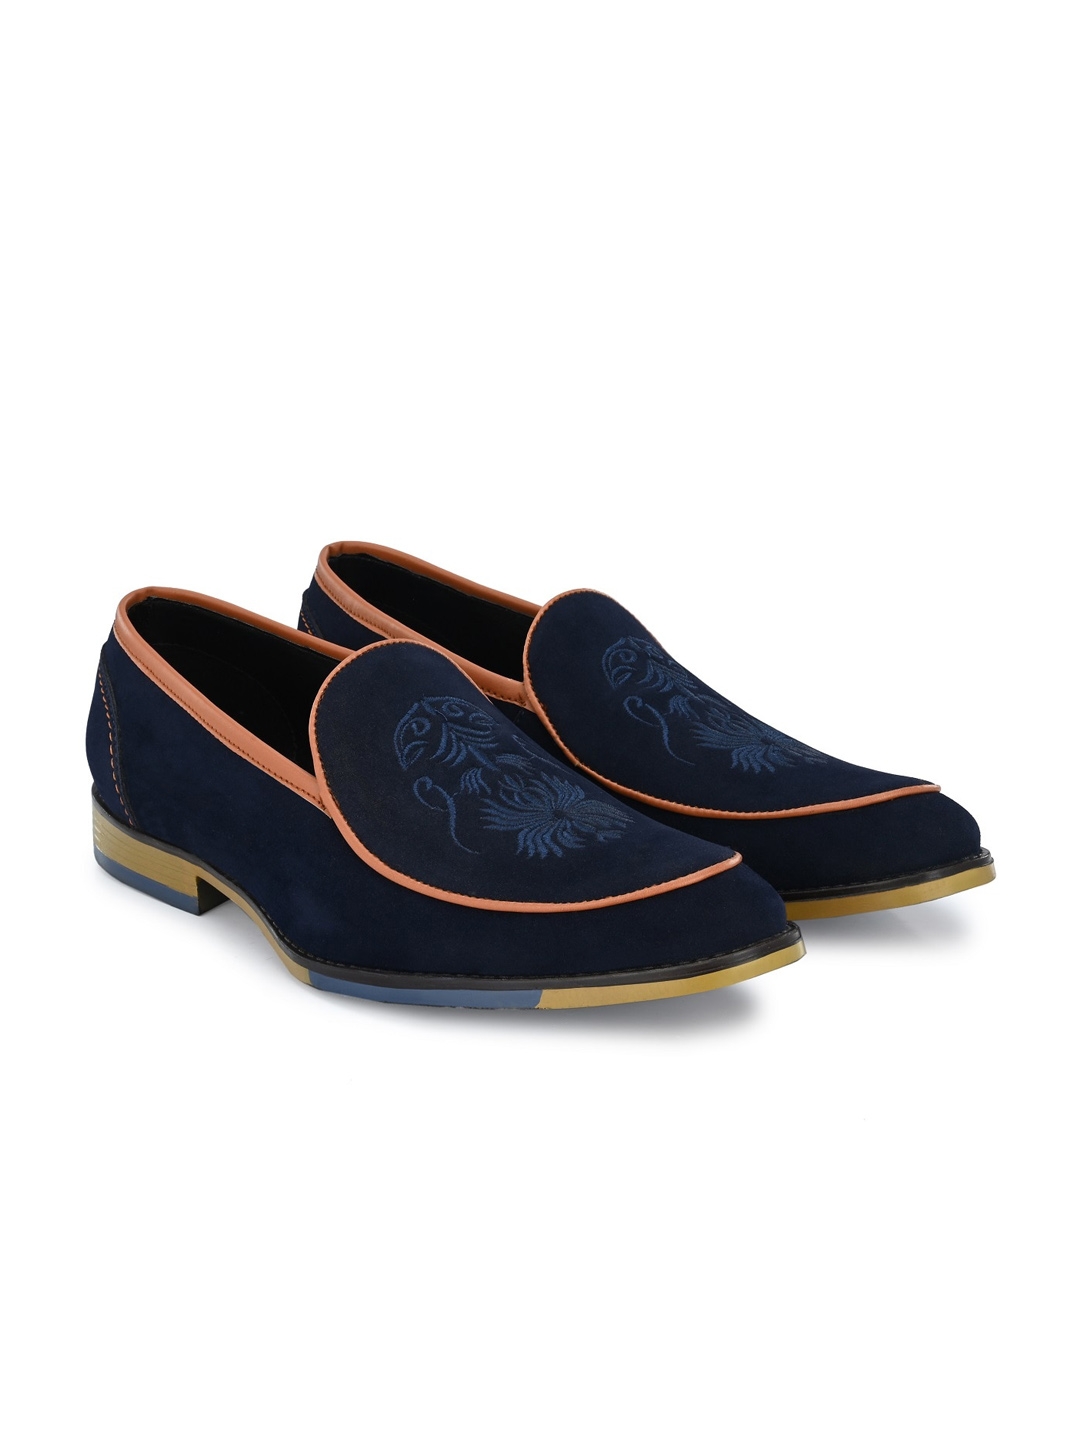 KLEAT Men Navy Blue Formal Loafer Shoes